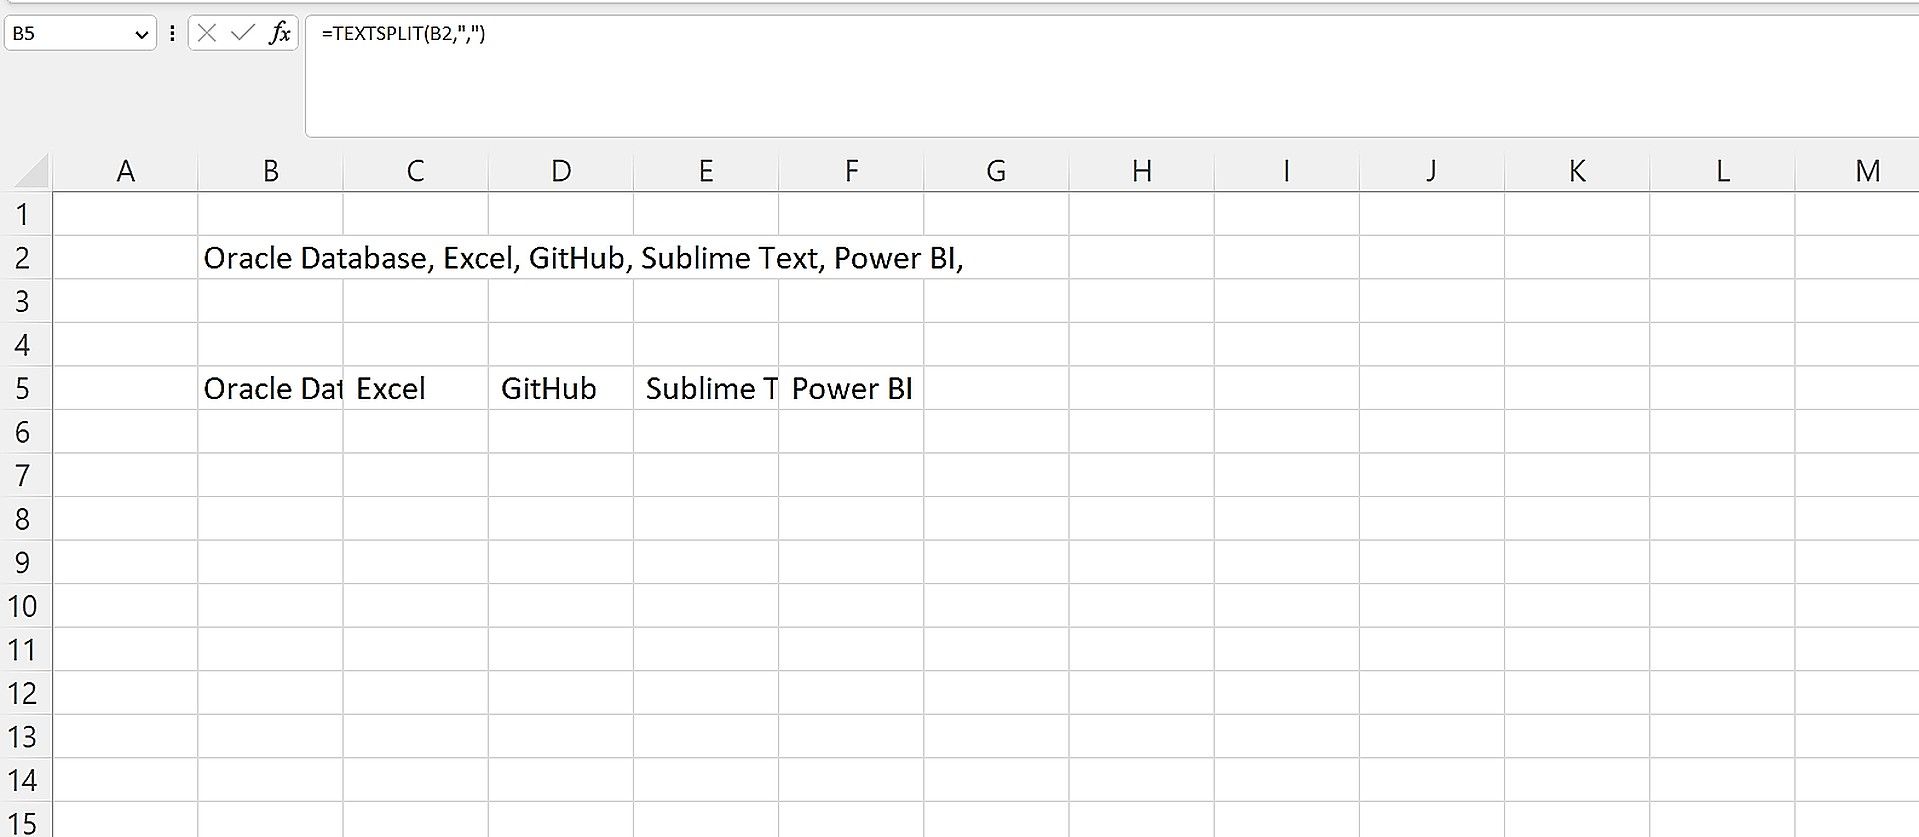 Danh sách phần mềm đang được sử dụng để trình bày cách sử dụng TEXTSPLIT trong Excel.